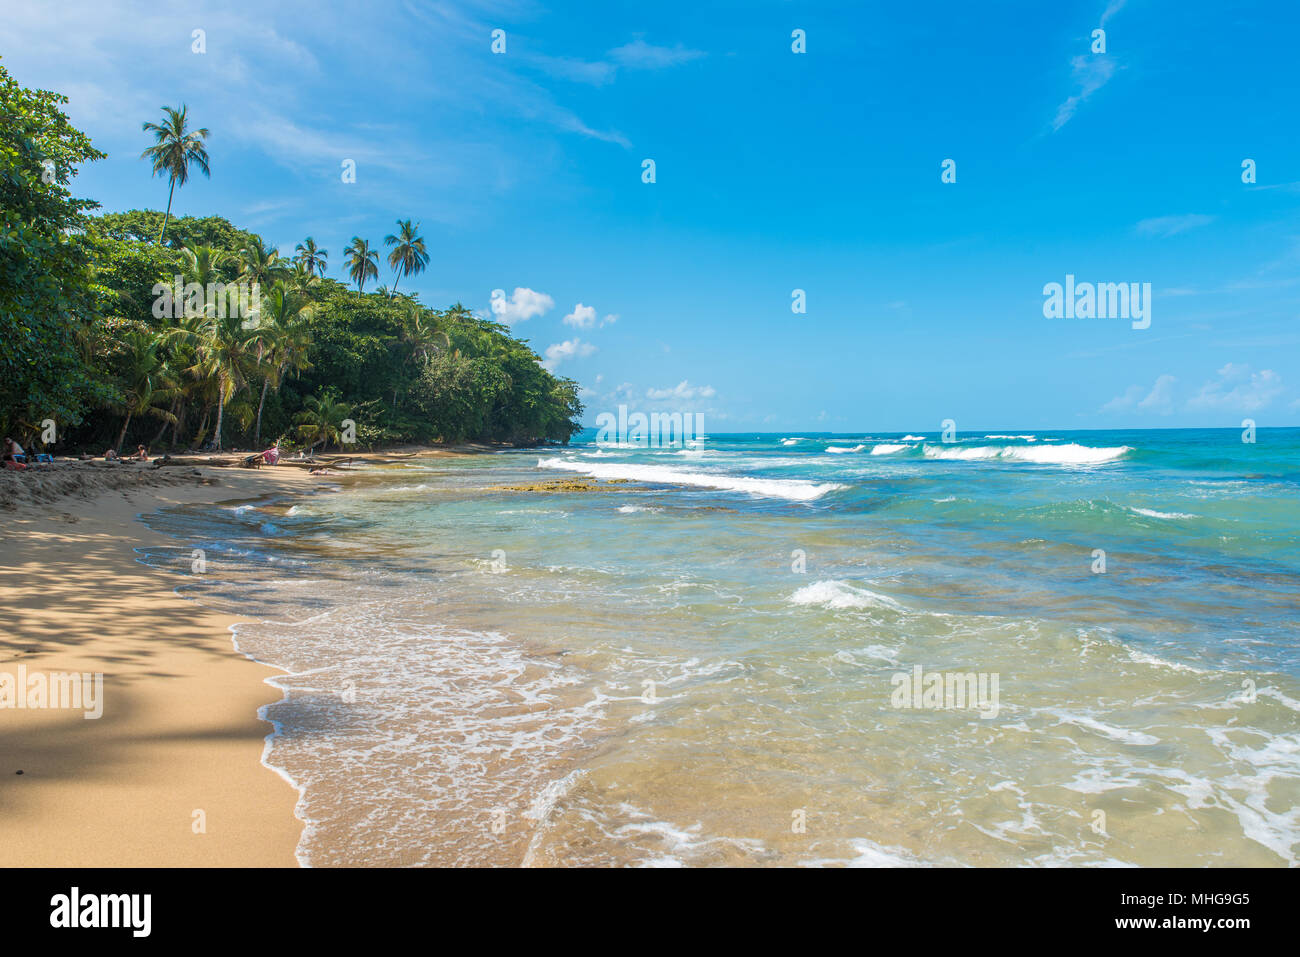 Playa Chiquita - Wild beach close to Puerto Viejo, Costa Rica Stock Photo